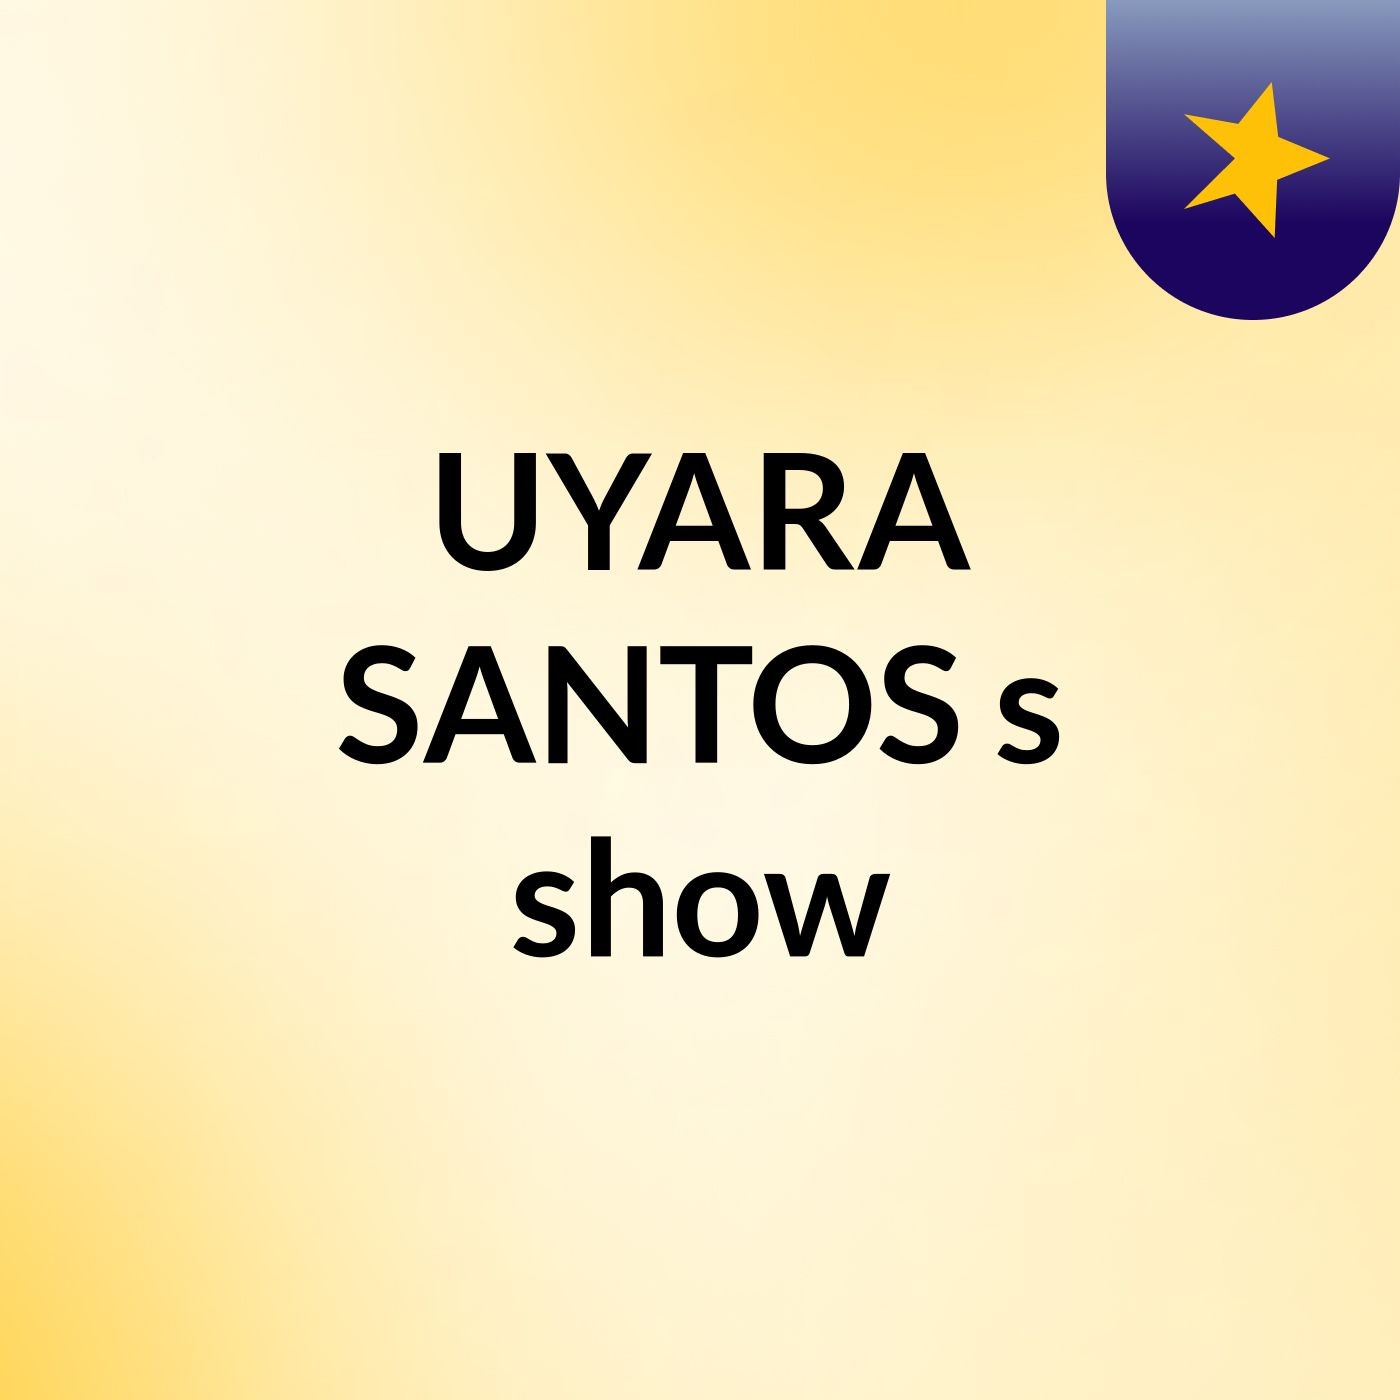 UYARA SANTOS's show